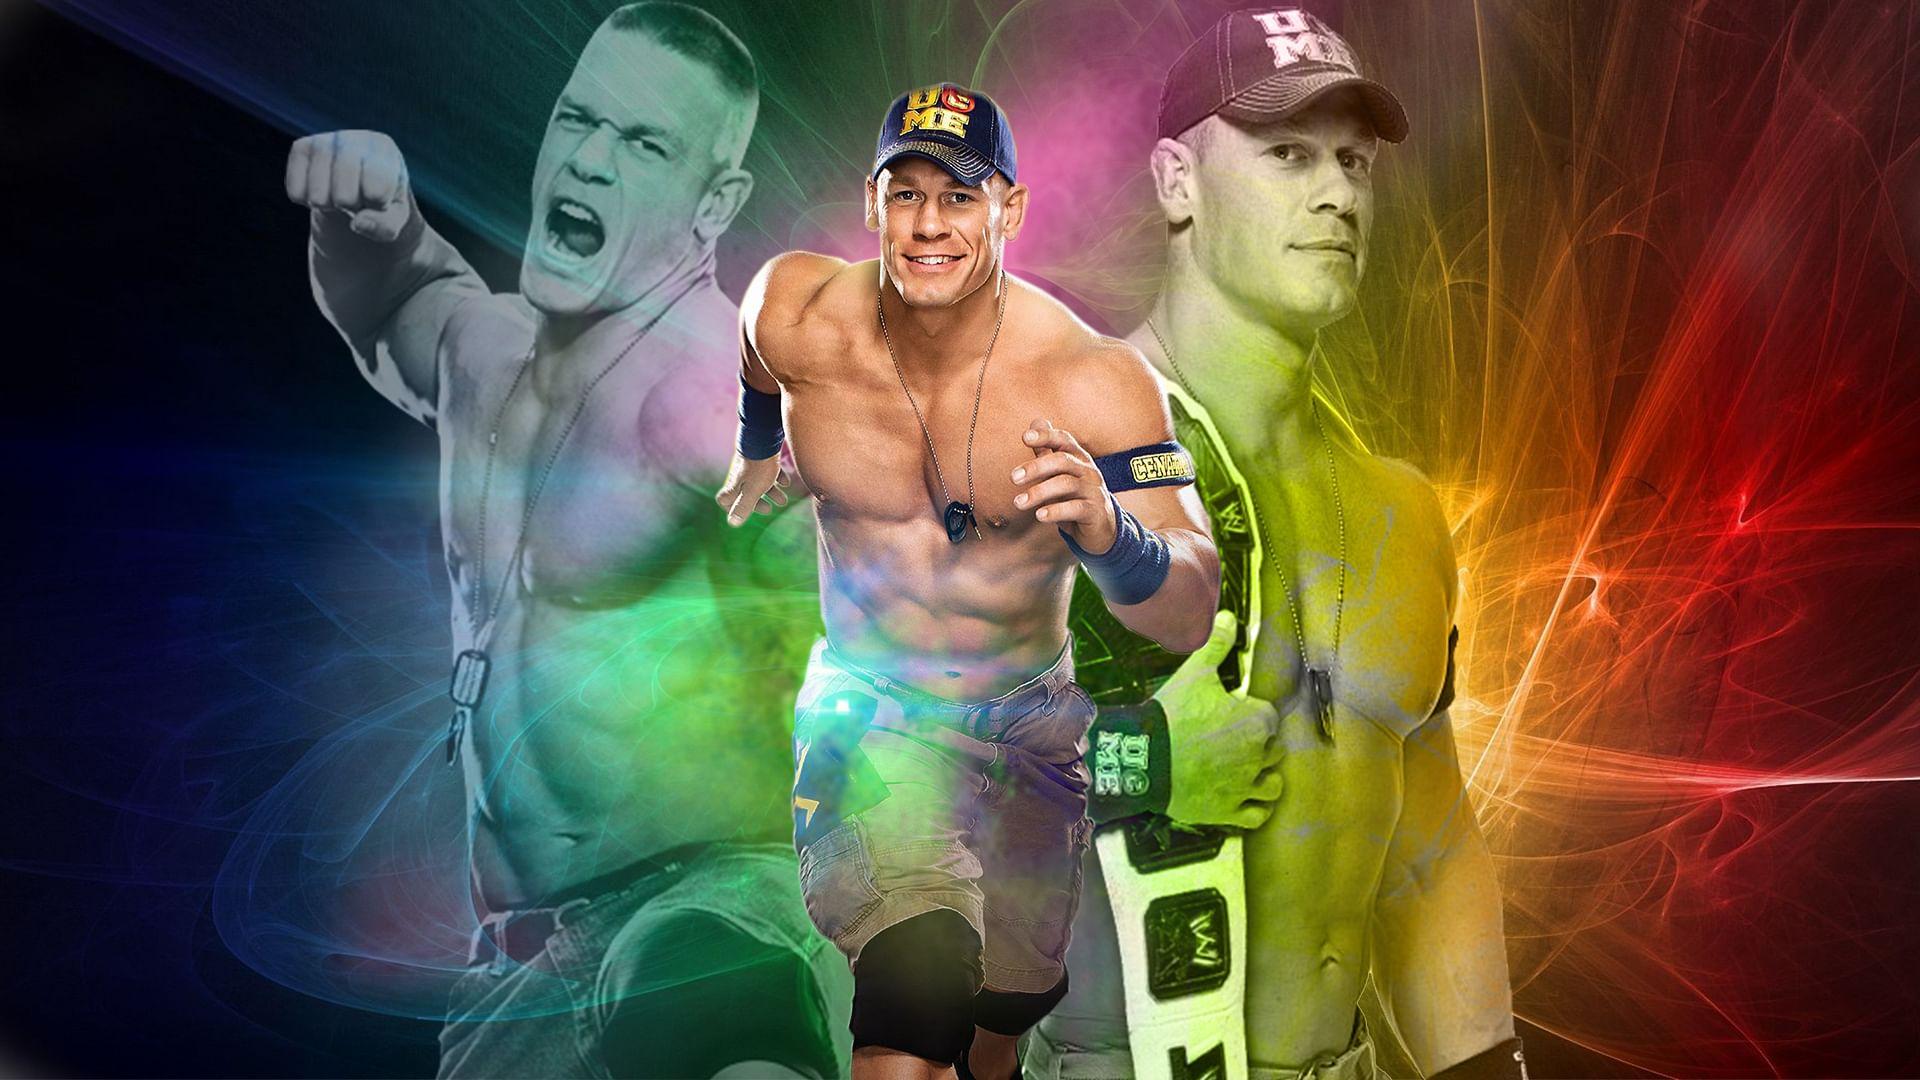 Tải xuống APK Hình nền John Cena WWE Gallery MỚI cho Android